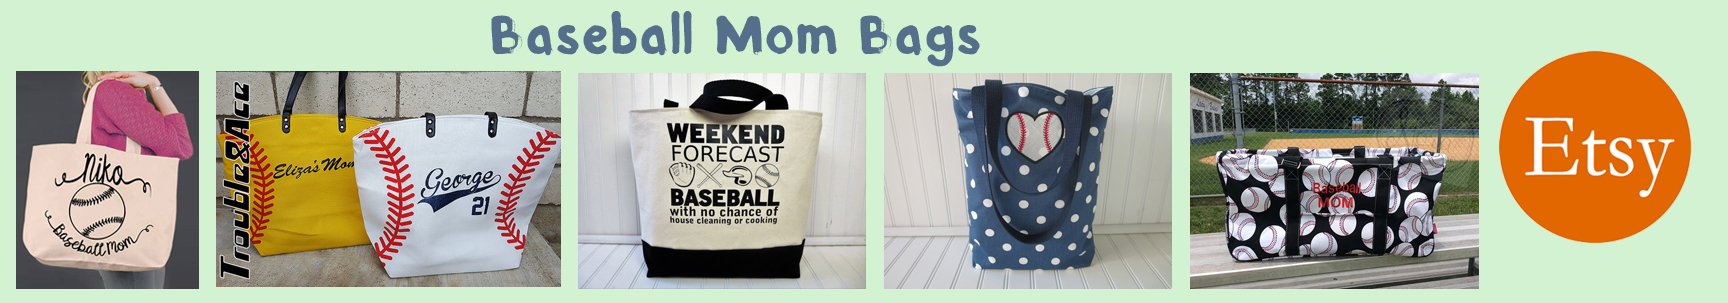 etsy baseball mom bags banner